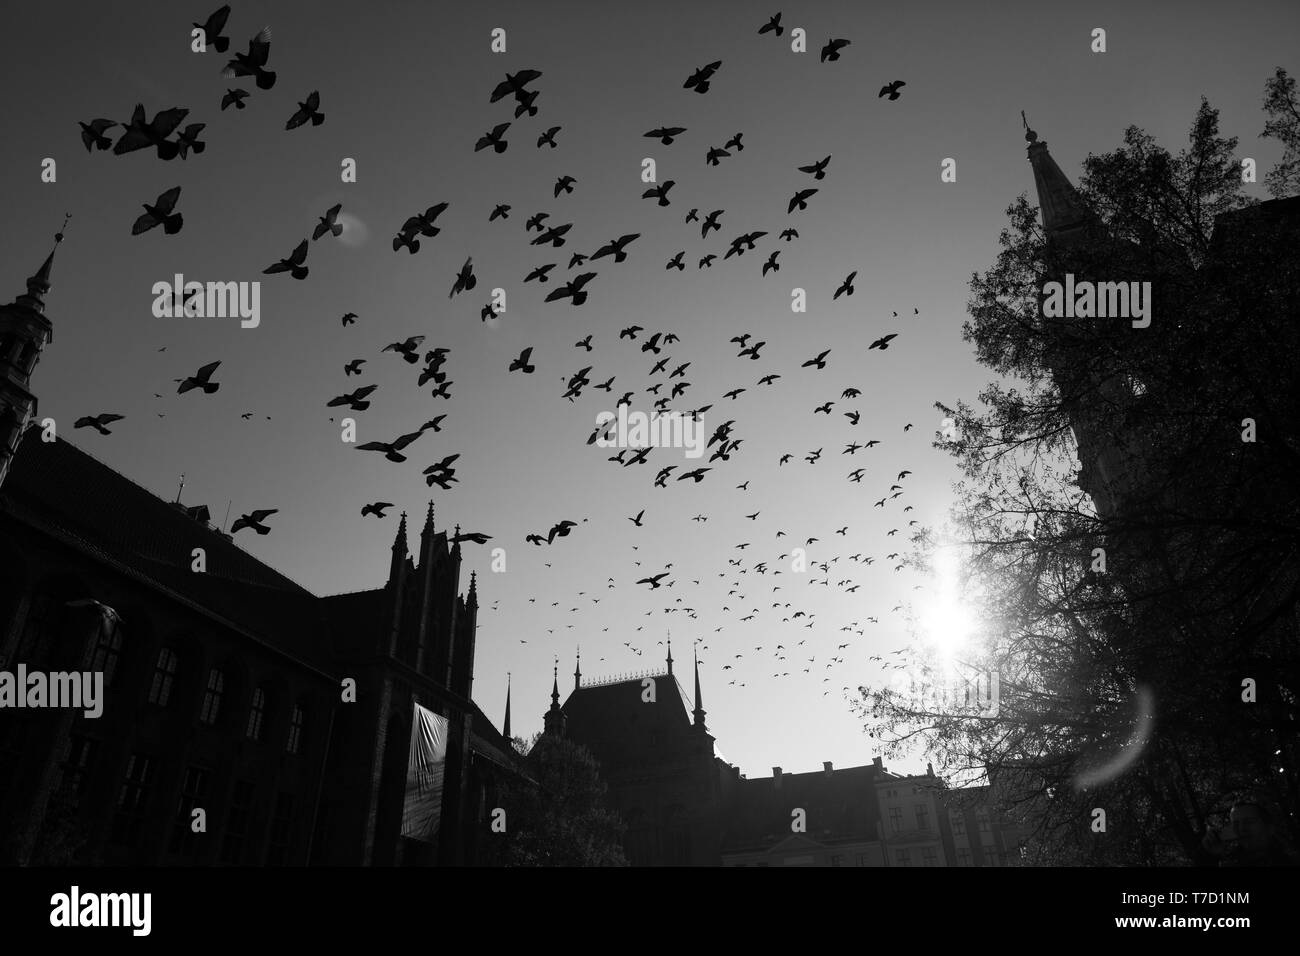 Pigeons de vol au-dessus de la ville de Torun, Pologne, noir et blanc photo Banque D'Images